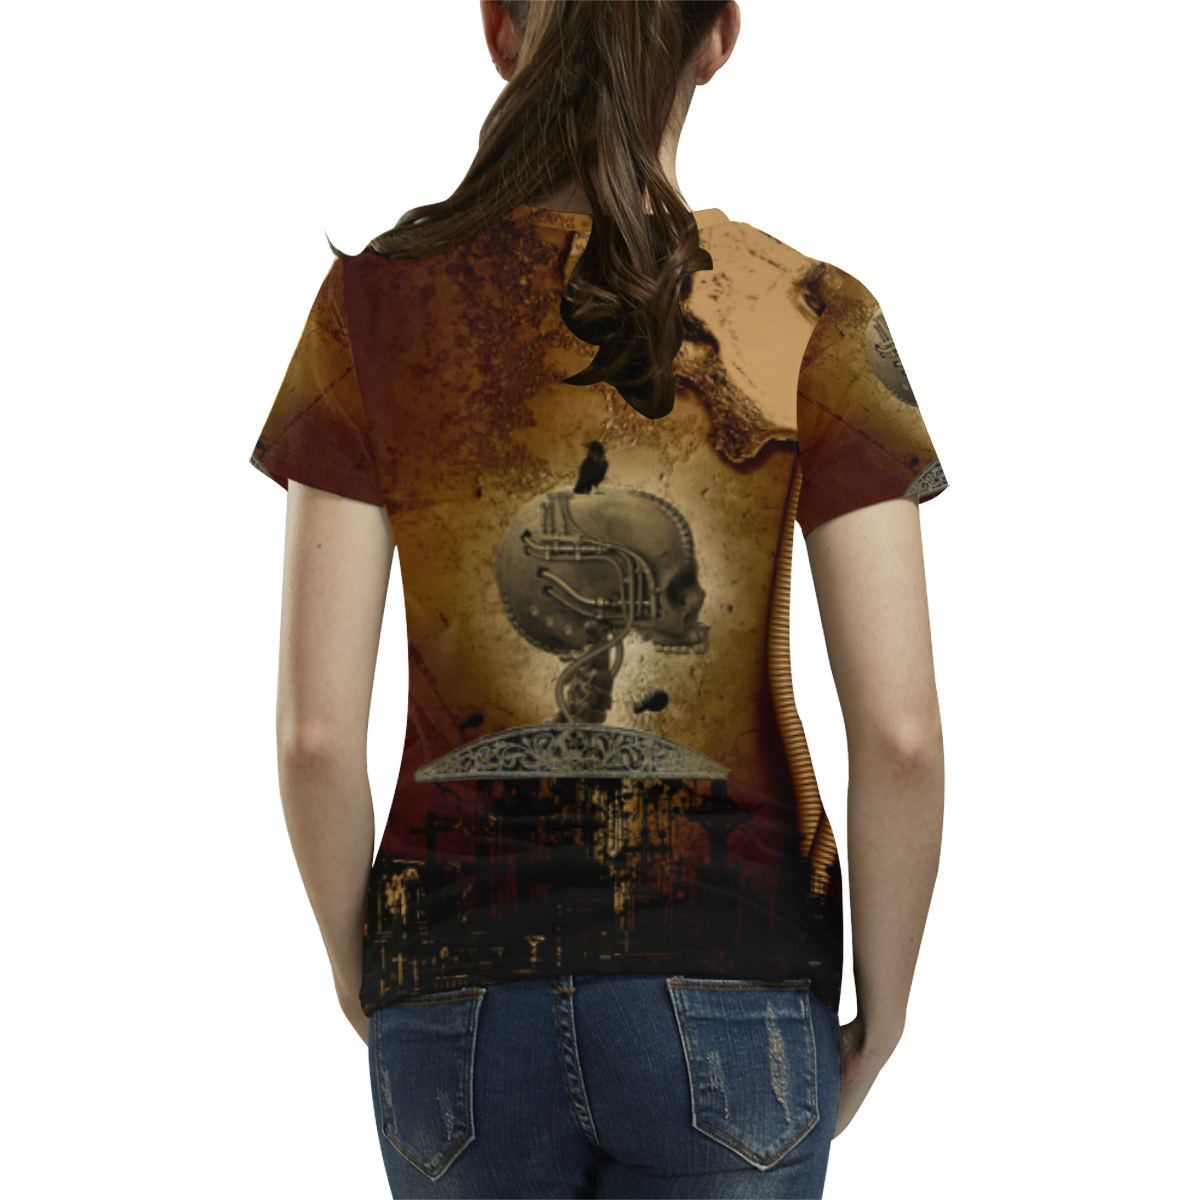 Mechanical skull All Over Print T-Shirt for Women (USA Size) (Model T40)